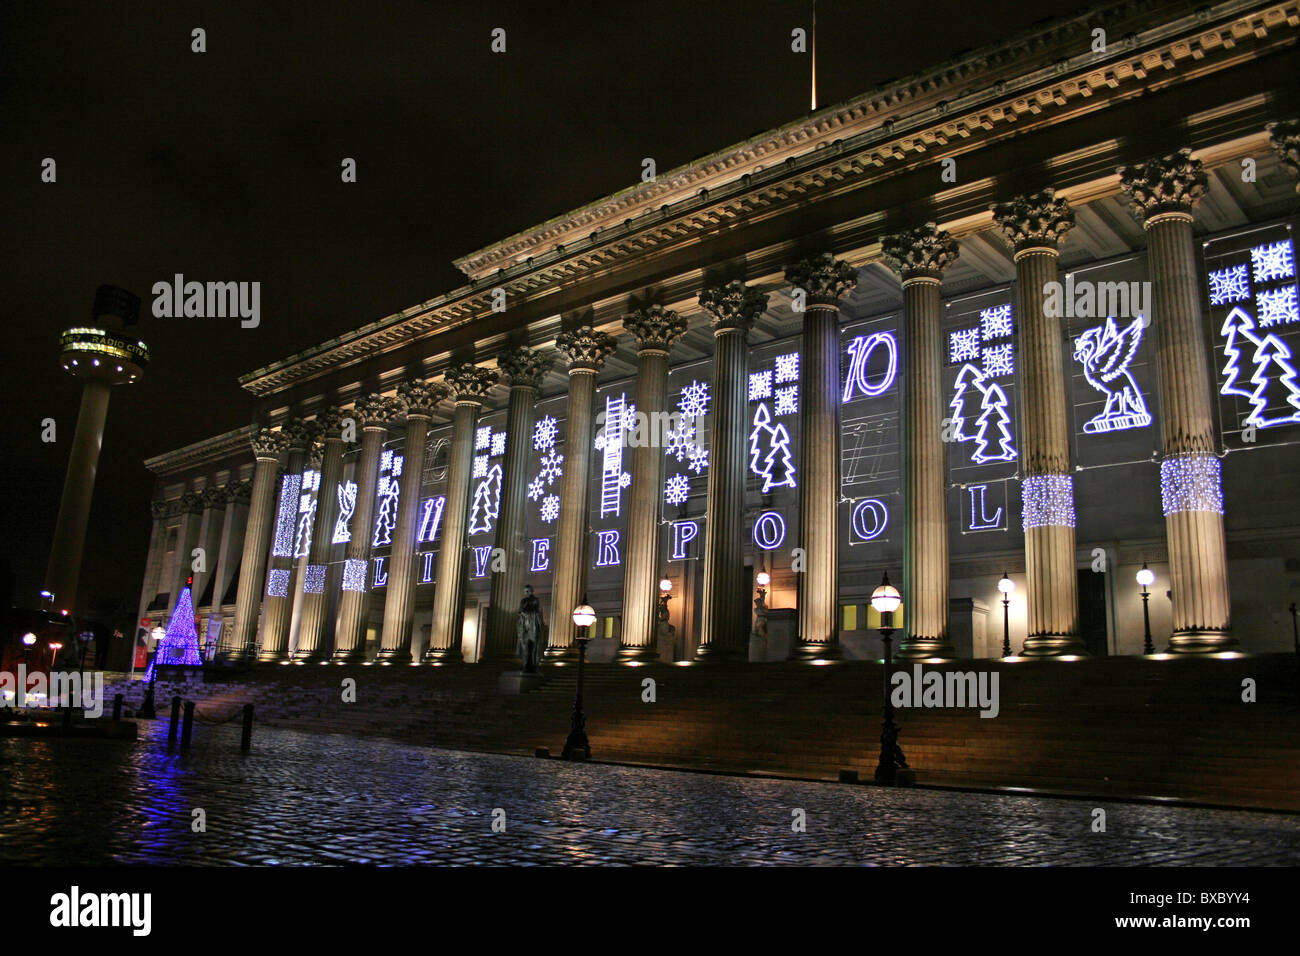 Di Liverpool St George's Hall illuminata con decorazioni di Natale, Liverpool, Merseyside, Regno Unito Foto Stock